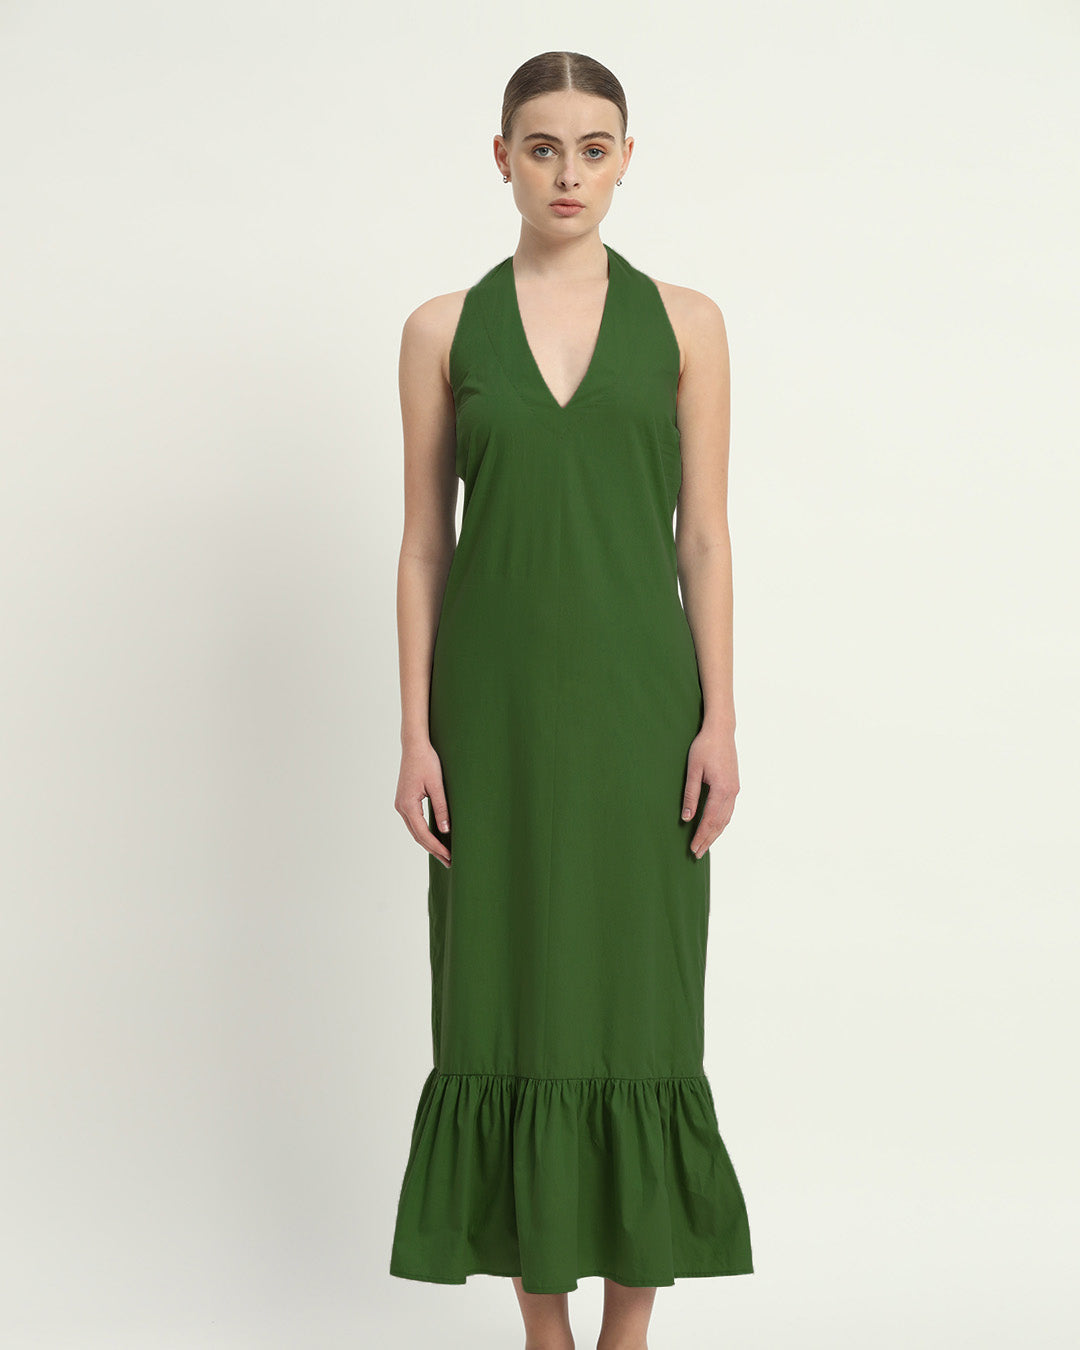 The Emerald Wellsville Cotton Dress